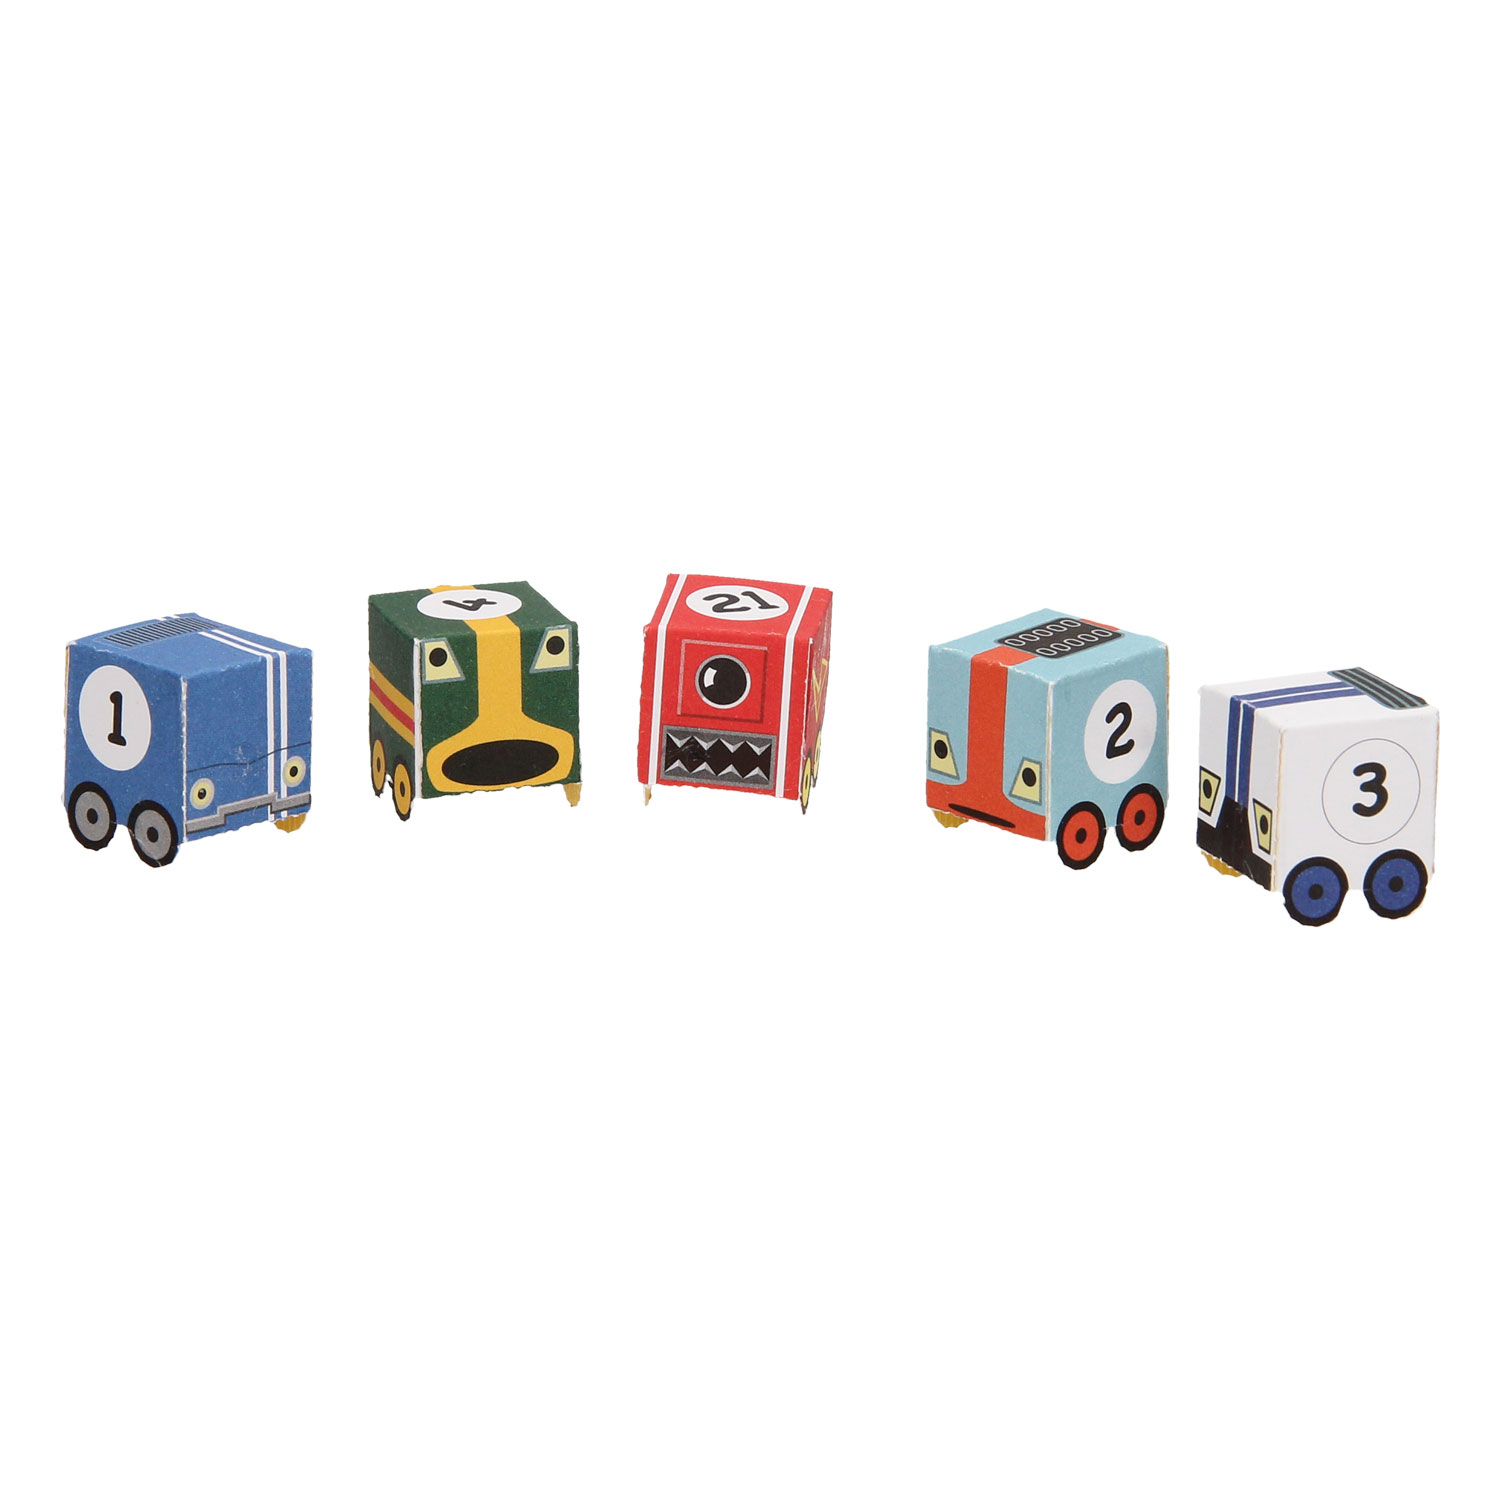 Paper Toys Knutelsboek - Coole robots